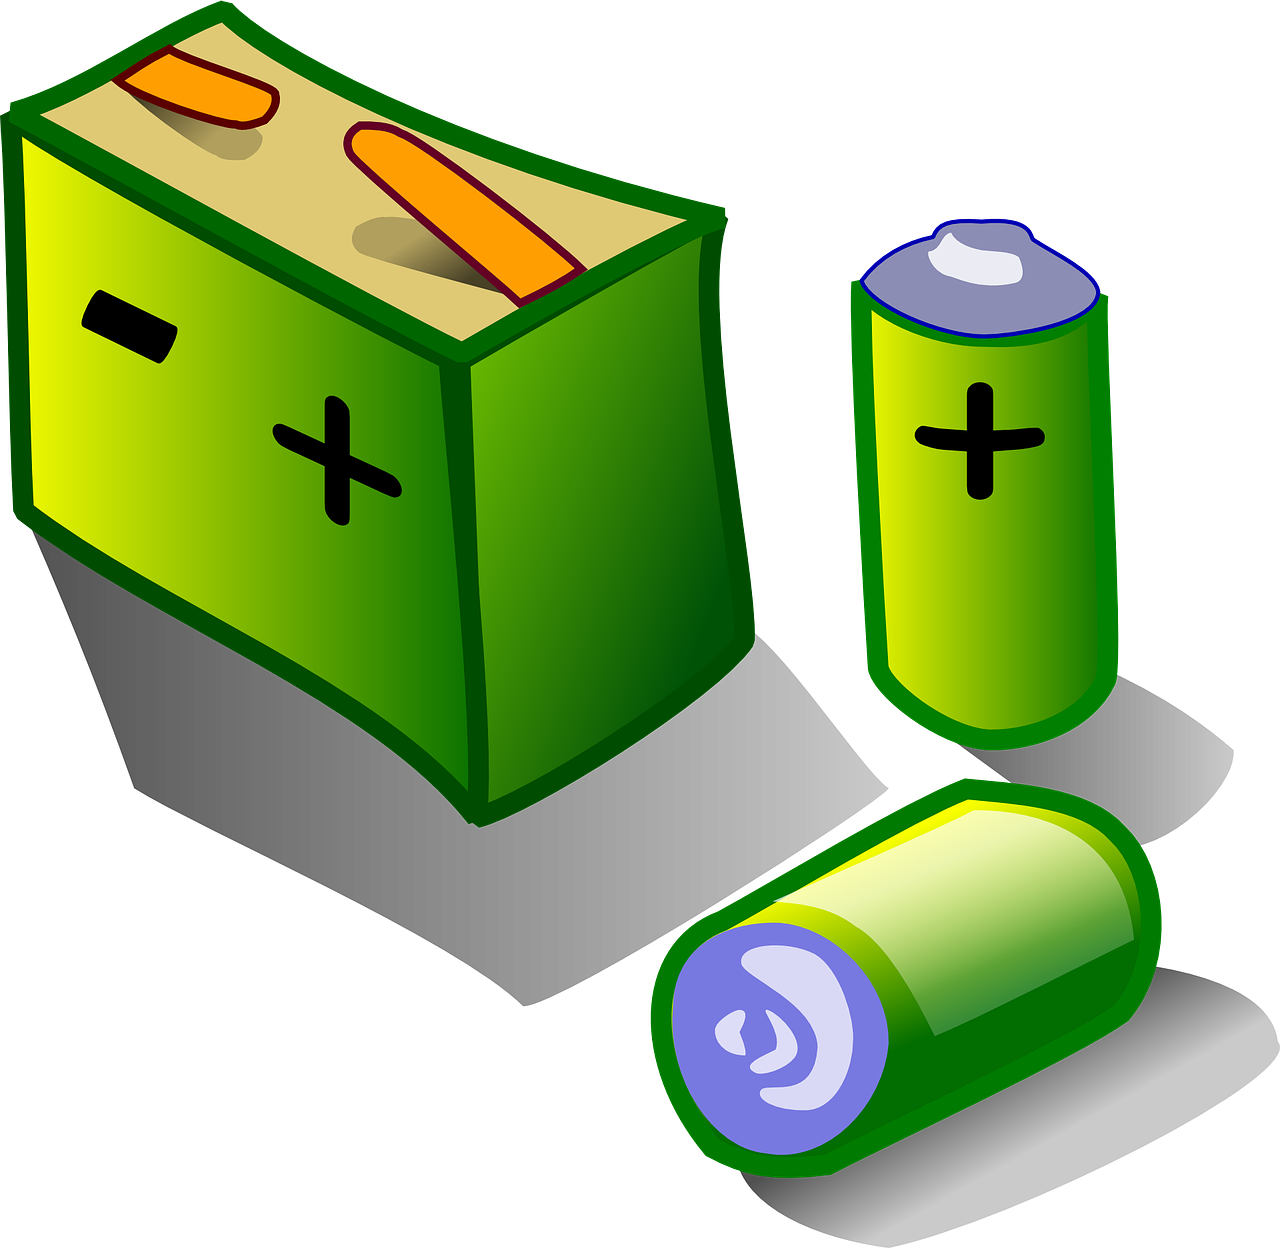 Lægger I gamle batterier til genbrug? | Analyser | Leifshows